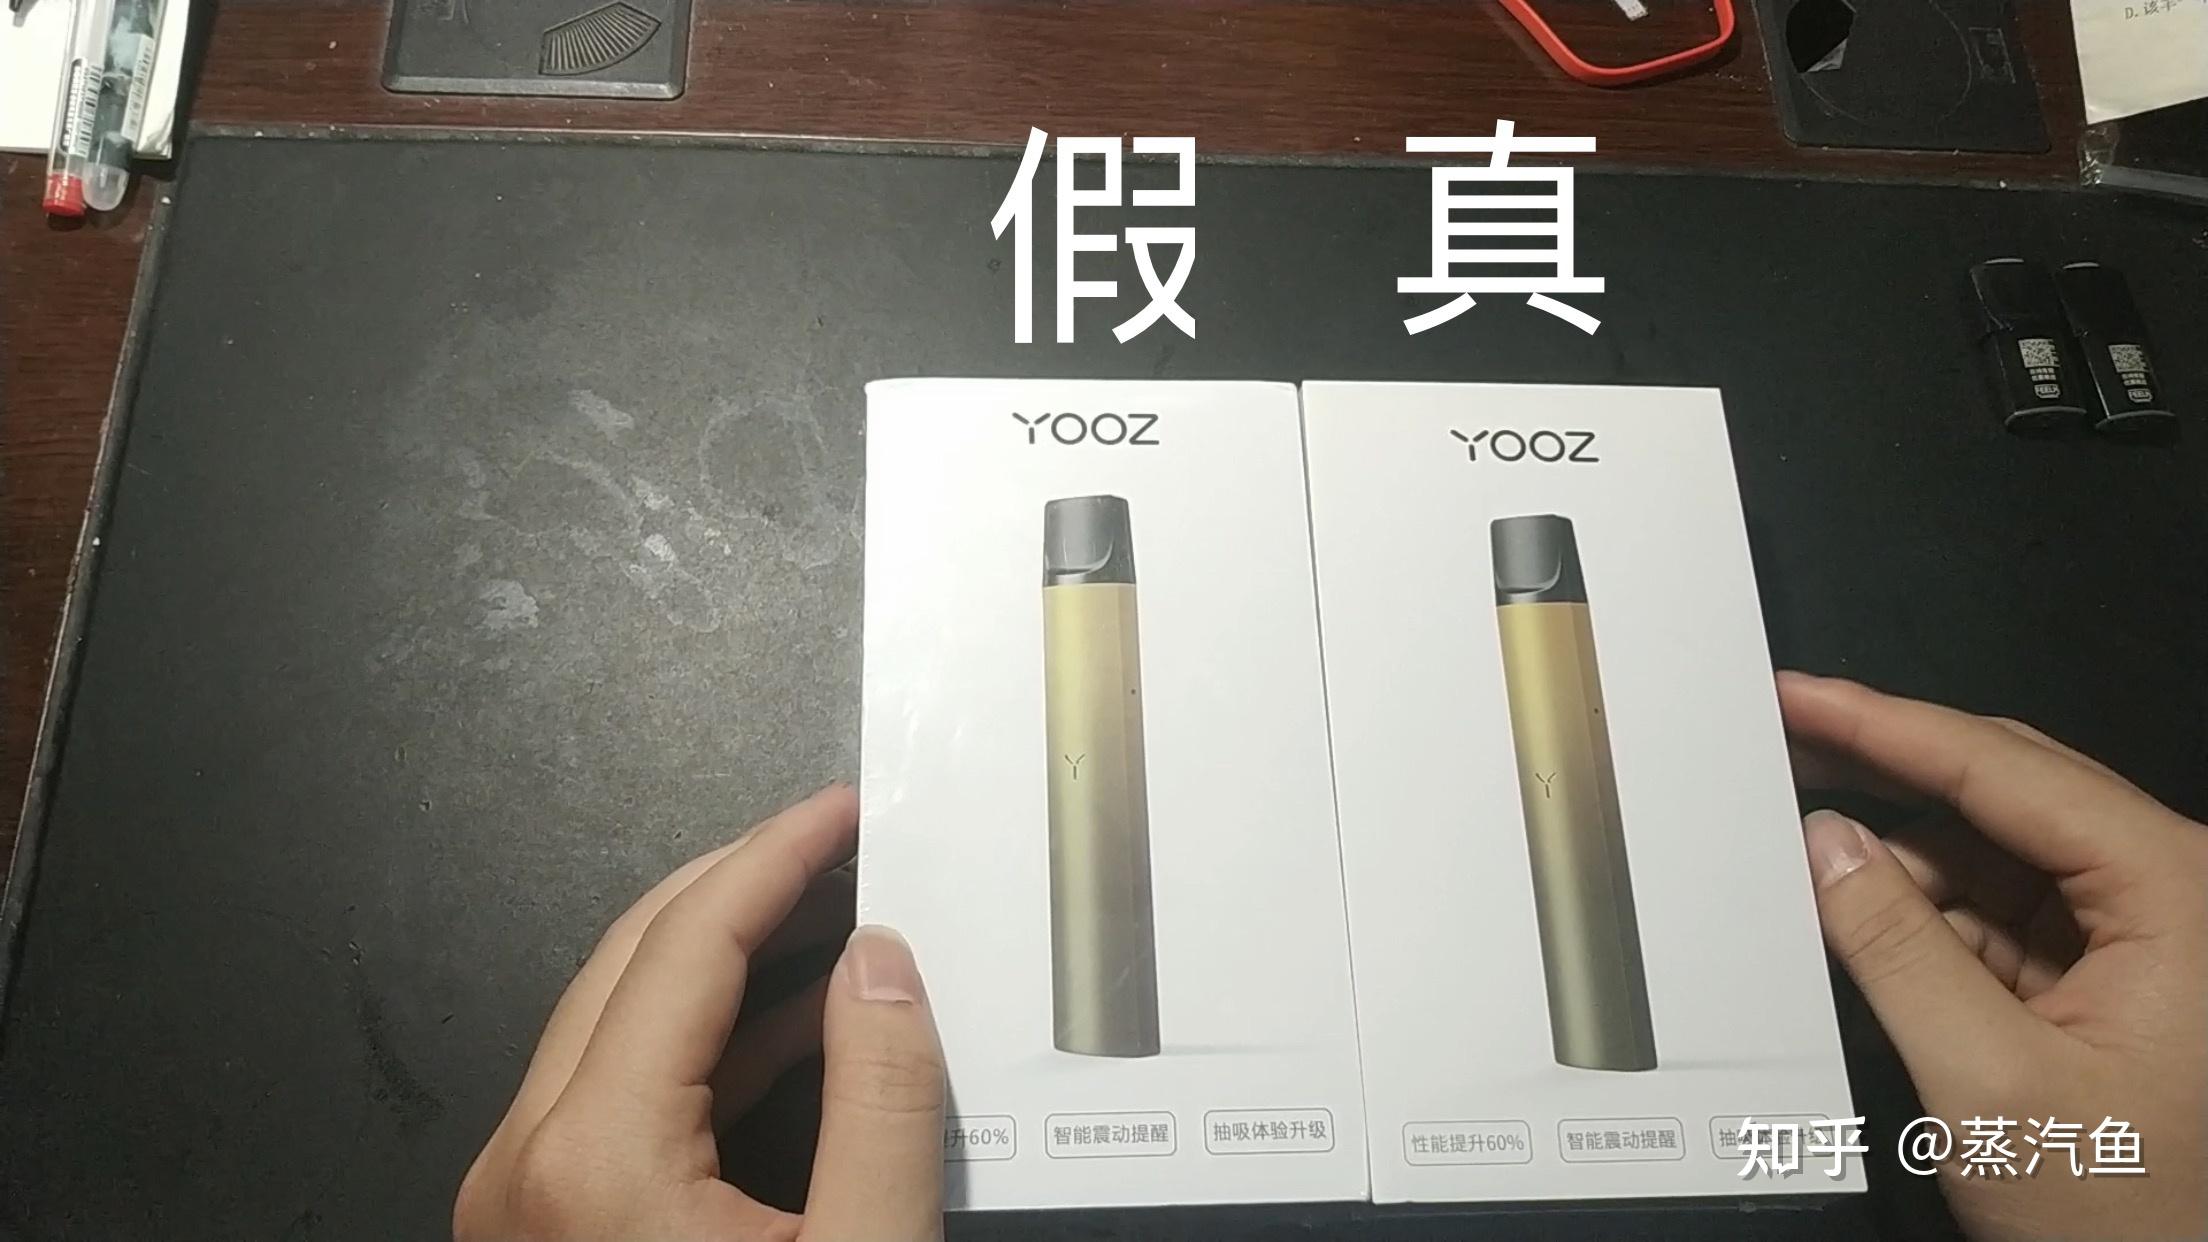 蒸汽鱼测评yooz柚子二代烟杆真假鉴别